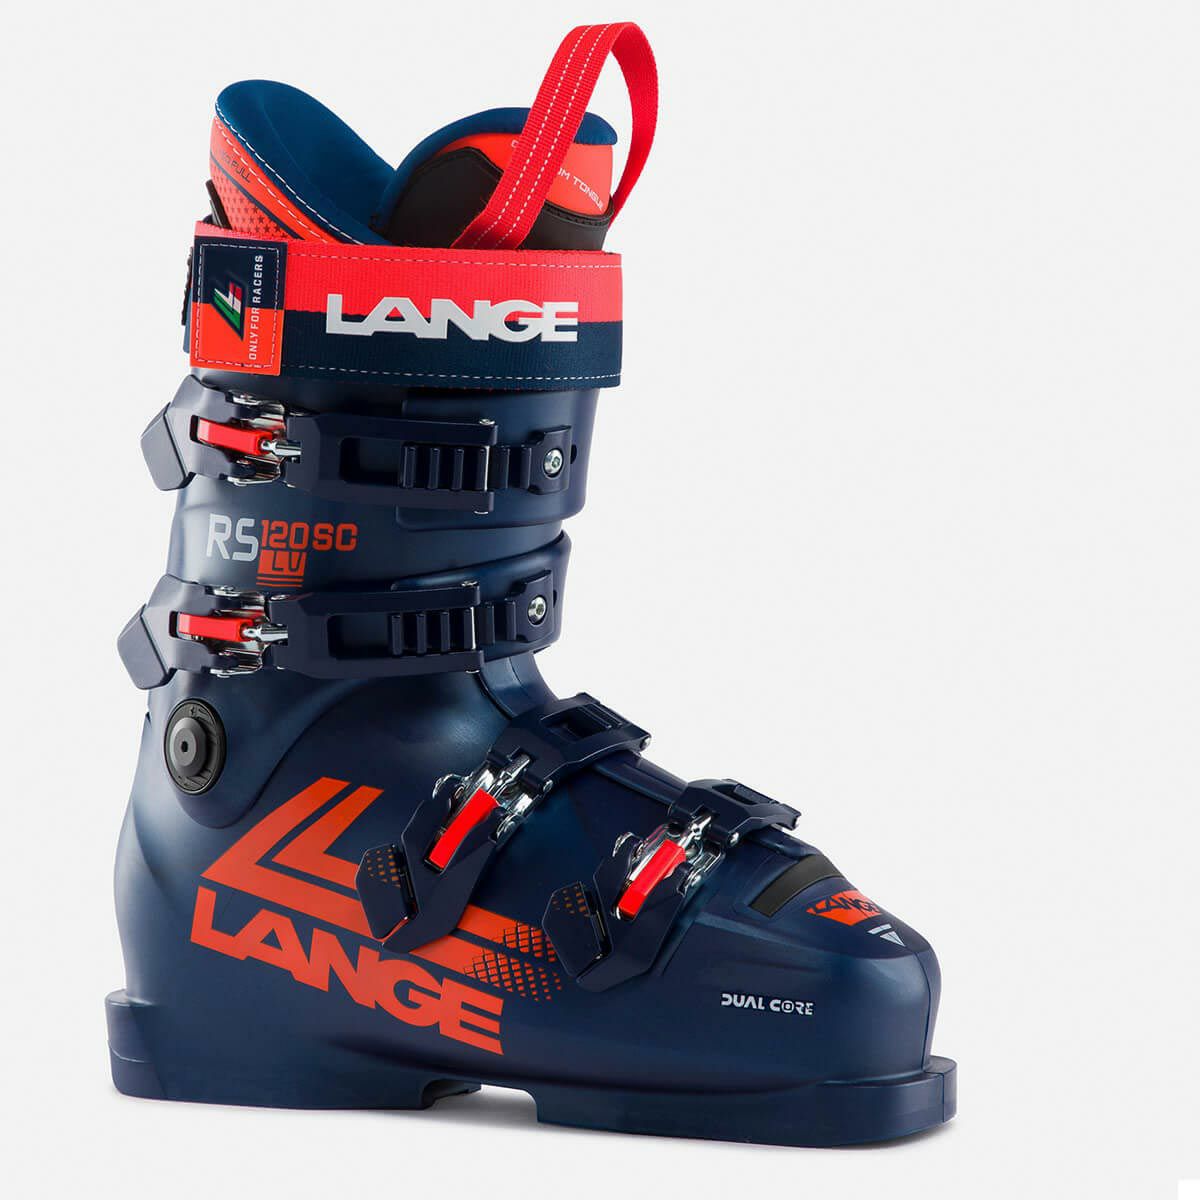 Langeブーツ205㎝ロシニョール　スキー板120㎝　Langeブーツ20.5㎝